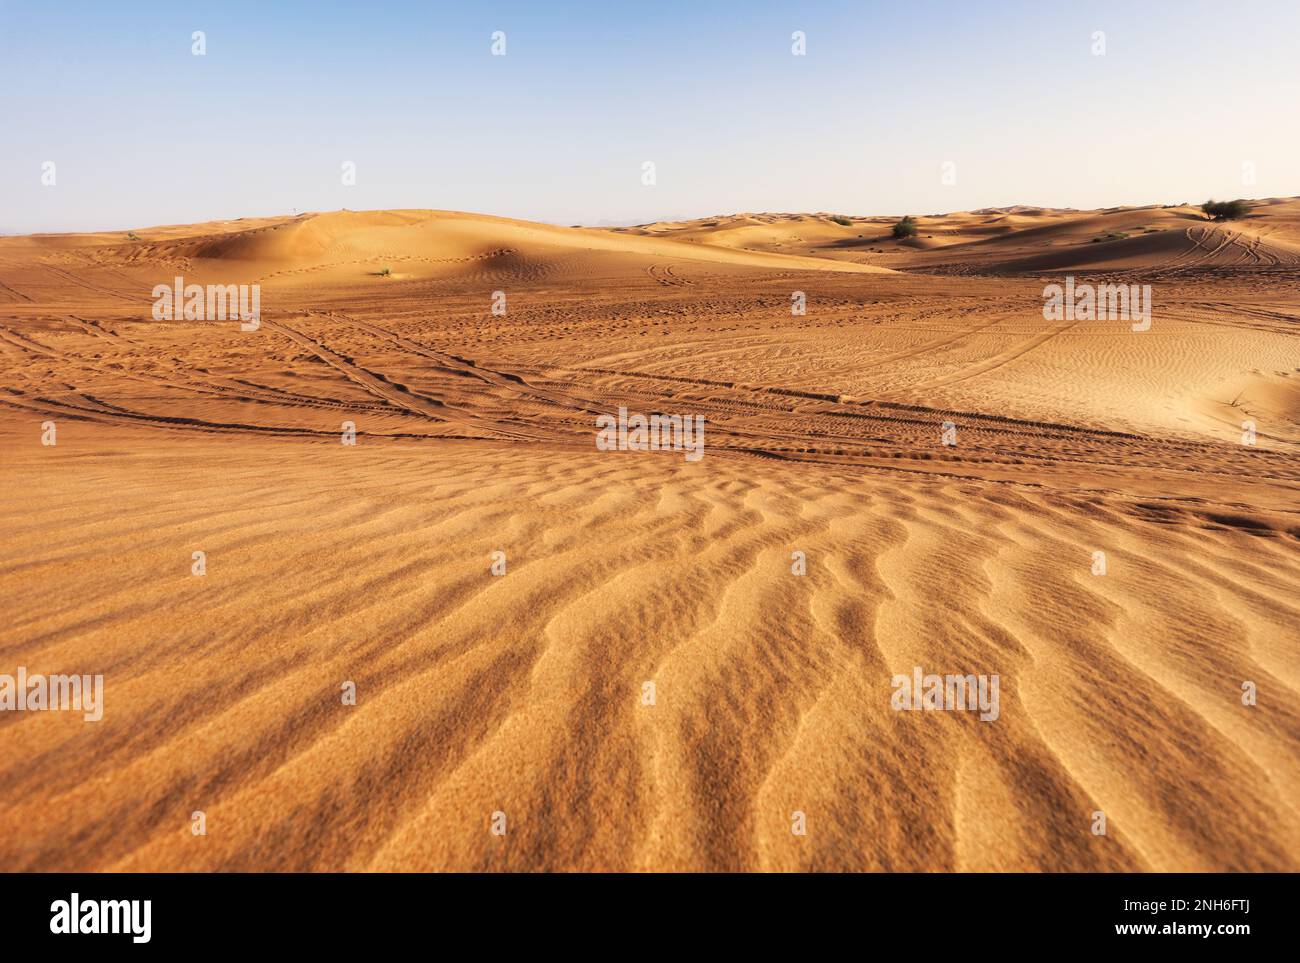 Magnifique coucher de soleil sur les dunes de sable dans le désert du quartier vide arabe, Émirats Arabes Unis. RUB' al Kali près de Dubaï Banque D'Images